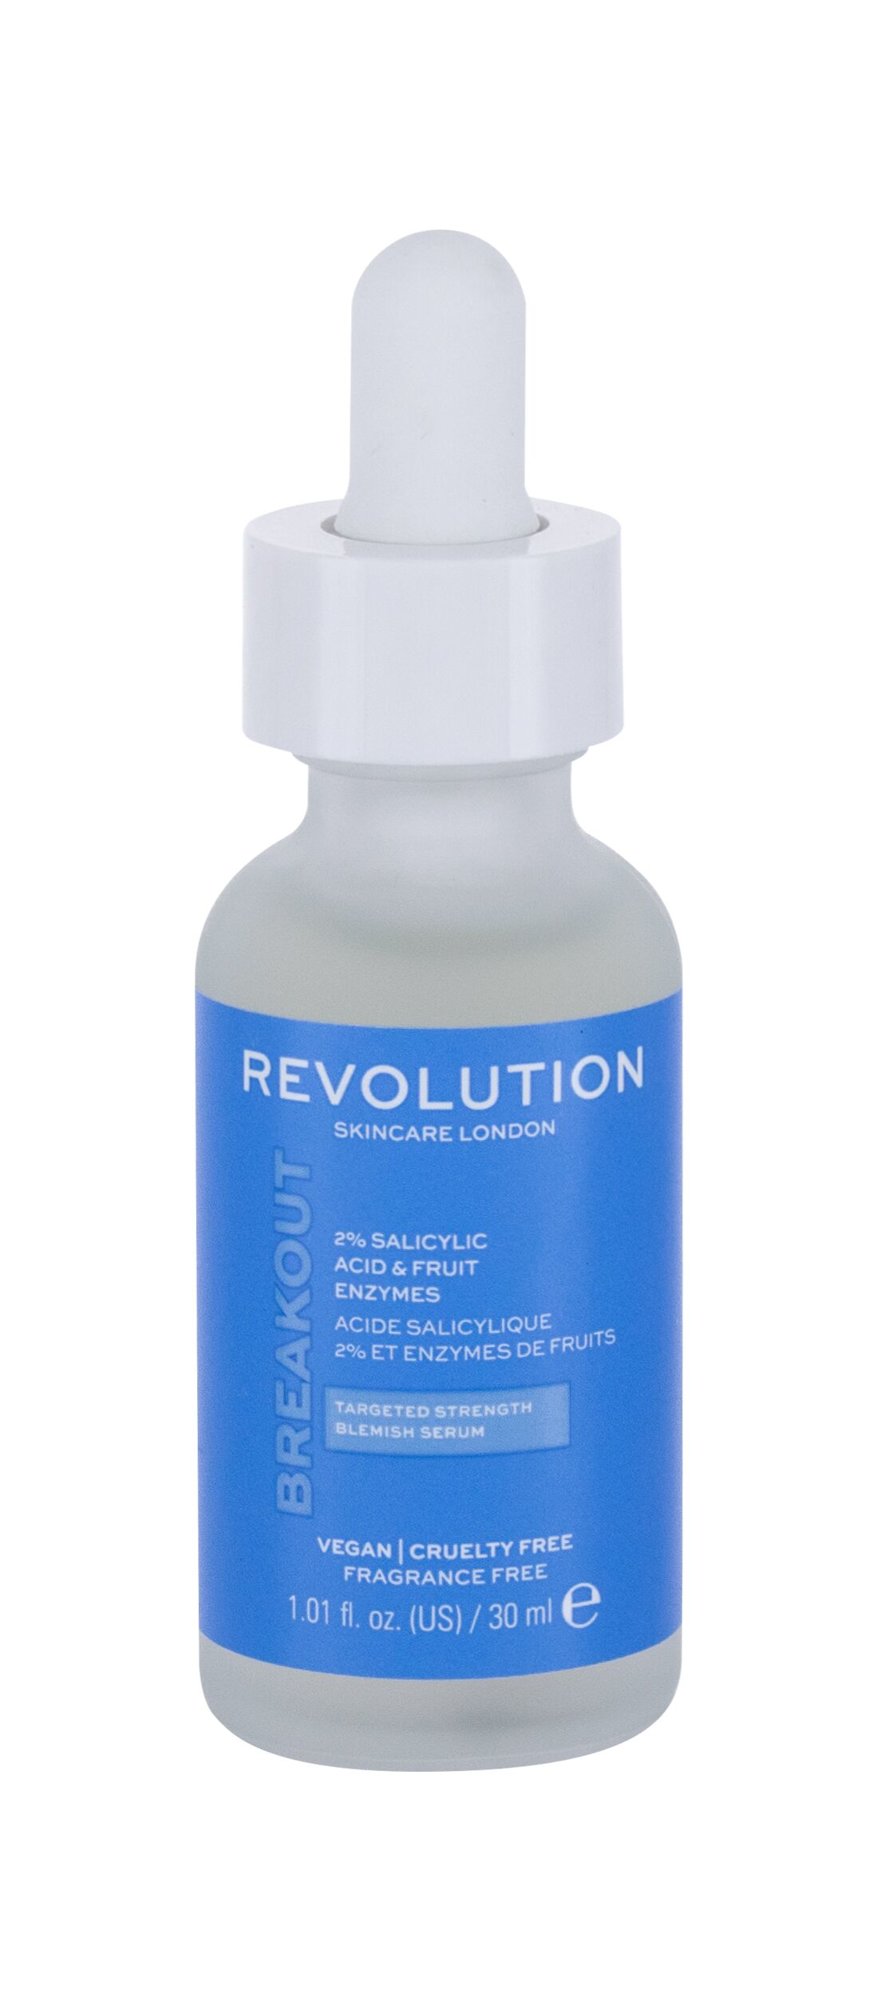 Revolution Skincare Skincare 2% Salicylic Acid Veido serumas